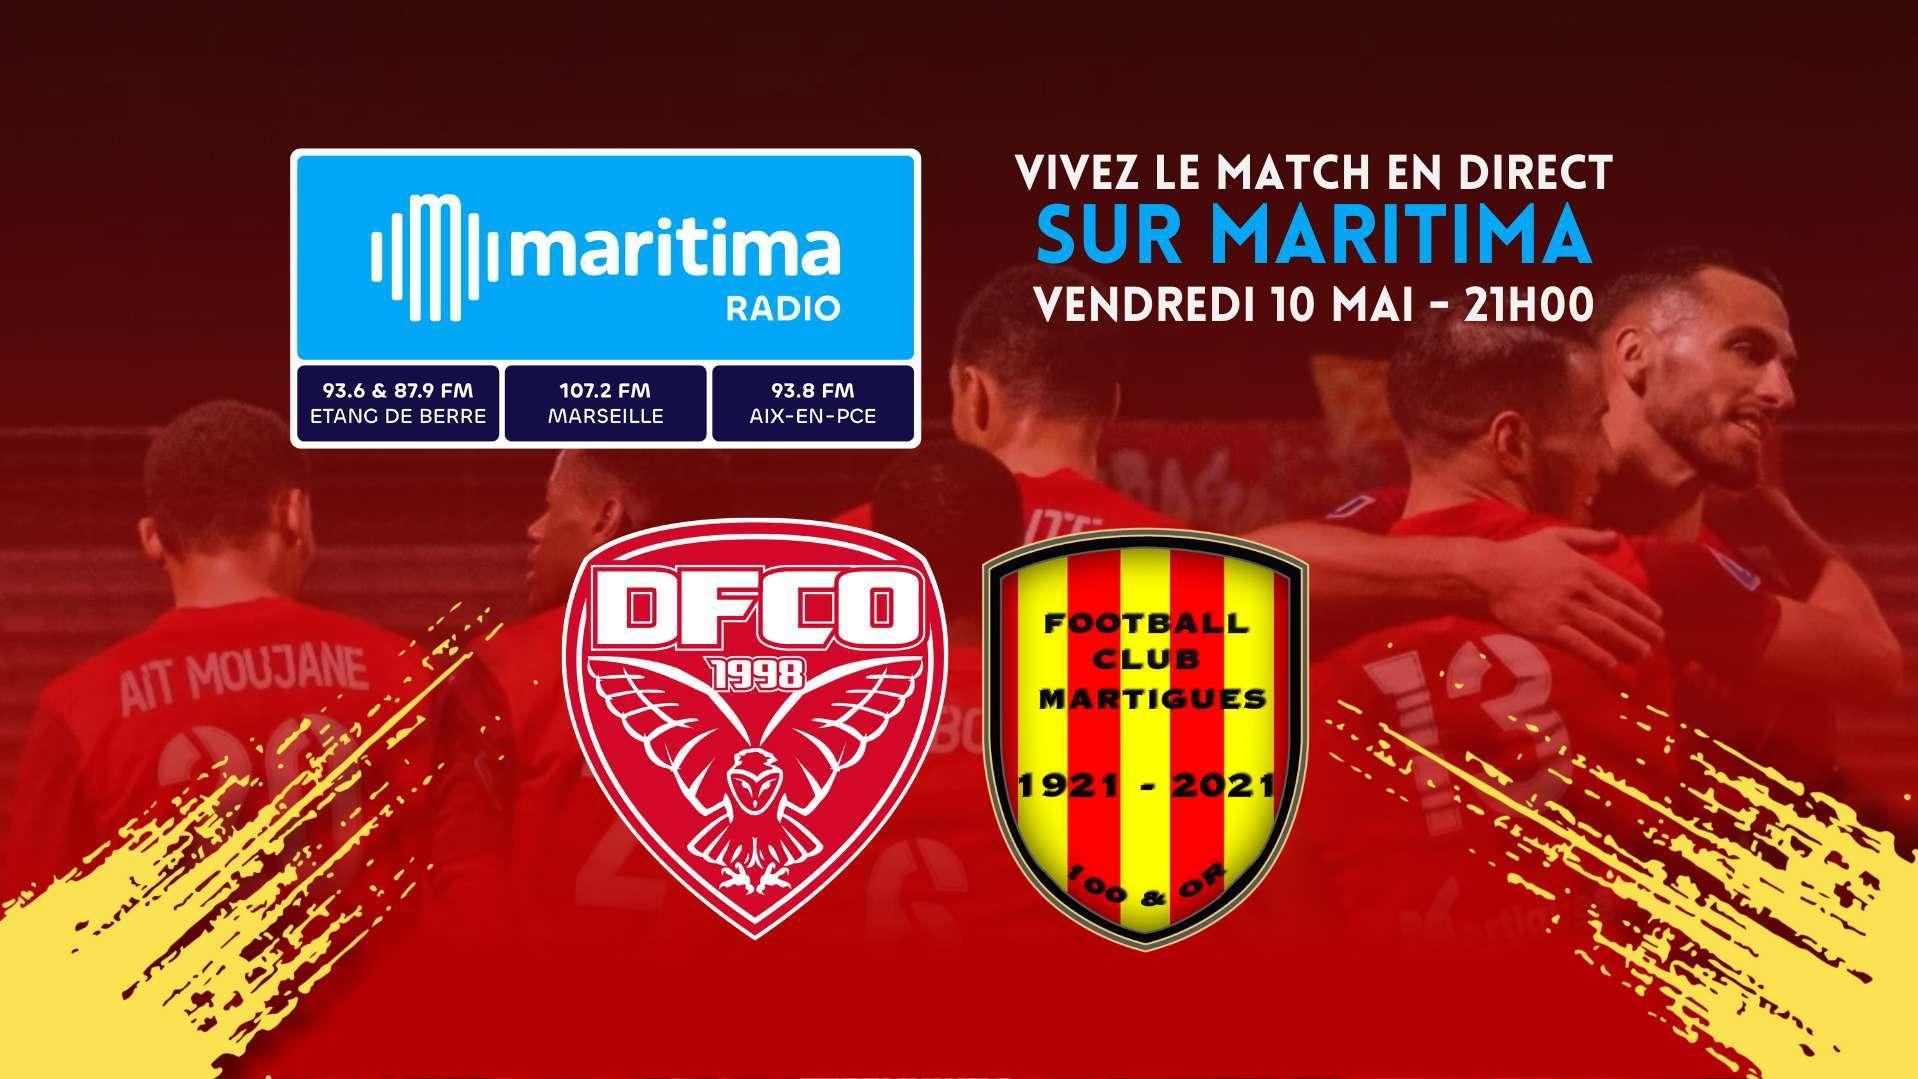 Dijon - FC Martigues : suivez la potentielle accession du FCM en Ligue 2 en direct sur maritima radio